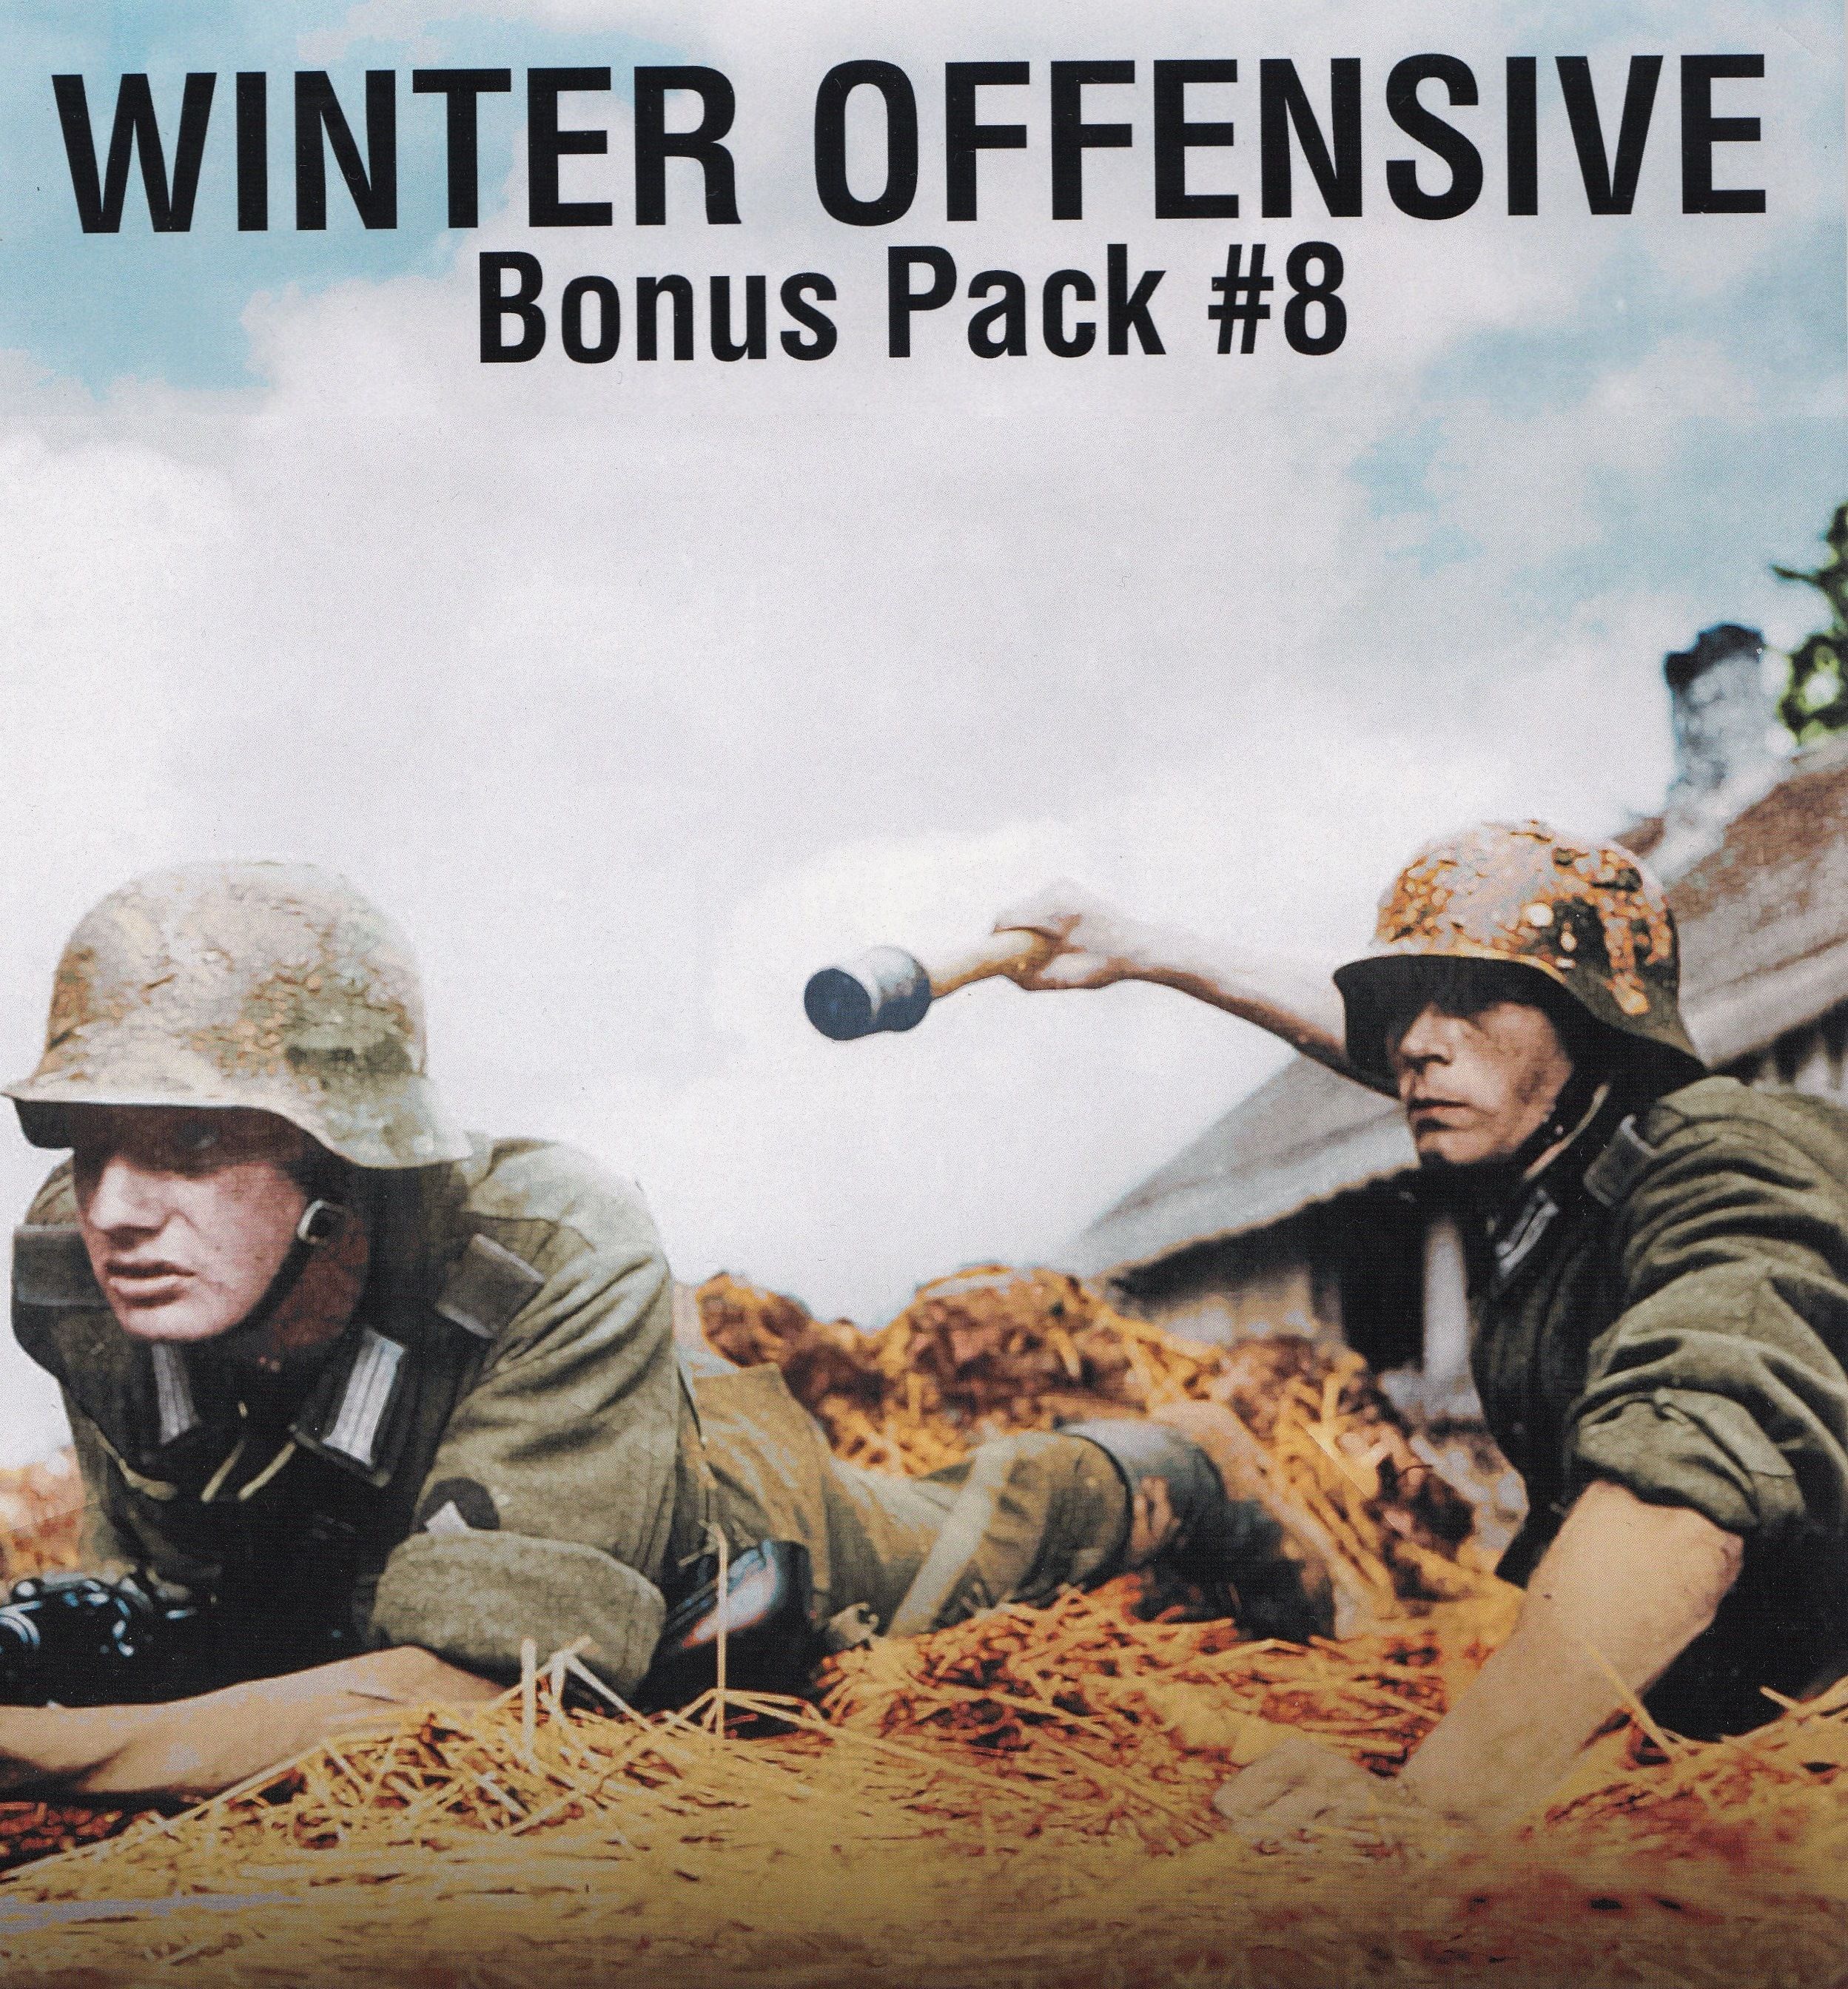 WO Bonus Pack #8: ASL Scenario Bonus Pack for Winter Offensive 2017